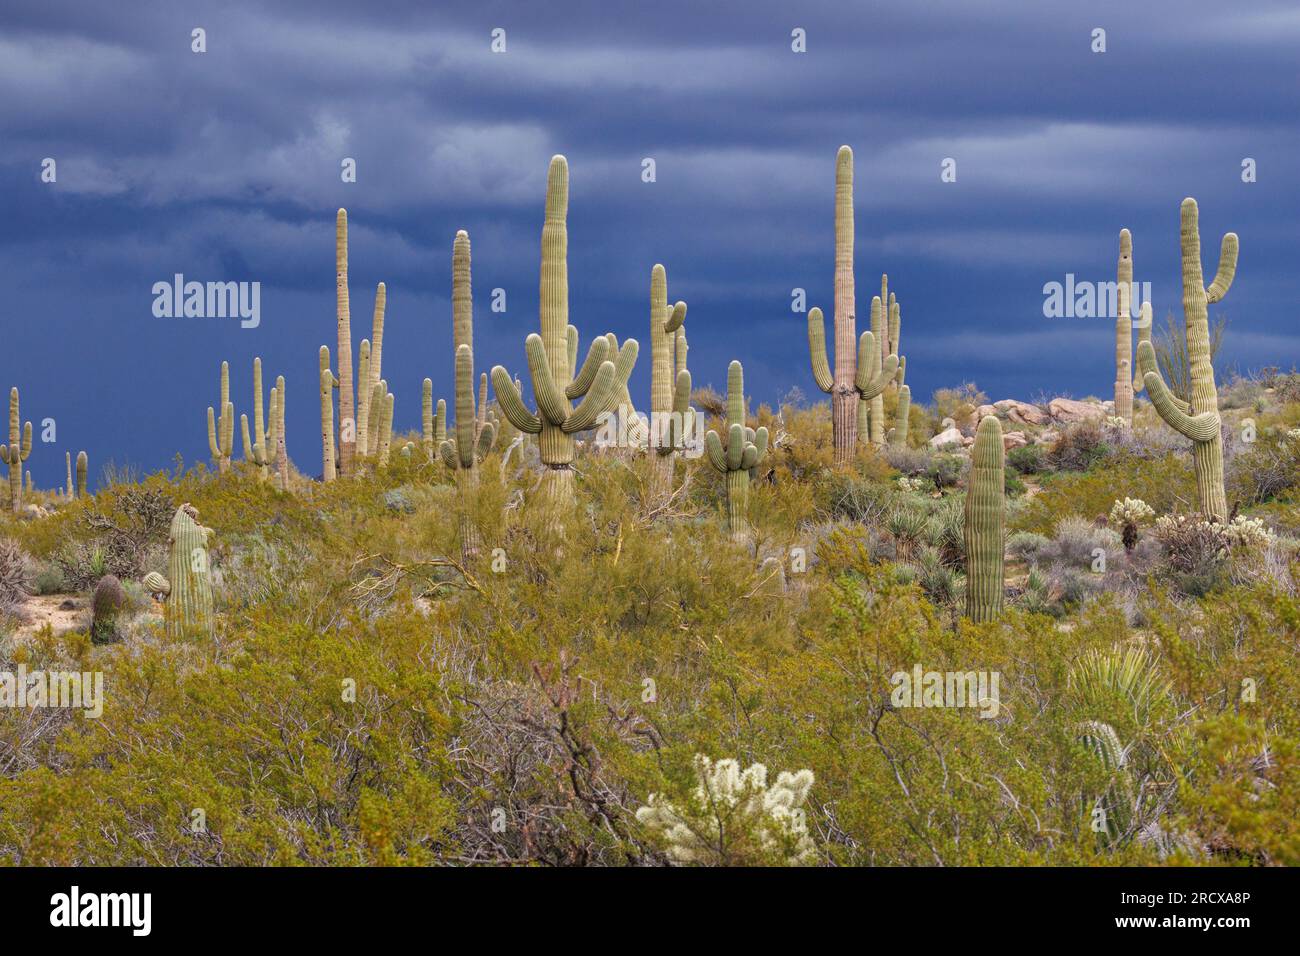 saguaro-Kakteen (Carnegiea gigantea, cereus giganteus), zahlreiche saguaro-Kakteen vor einer sich nähernden Gewitterfront, USA, Arizona, Browns Stockfoto